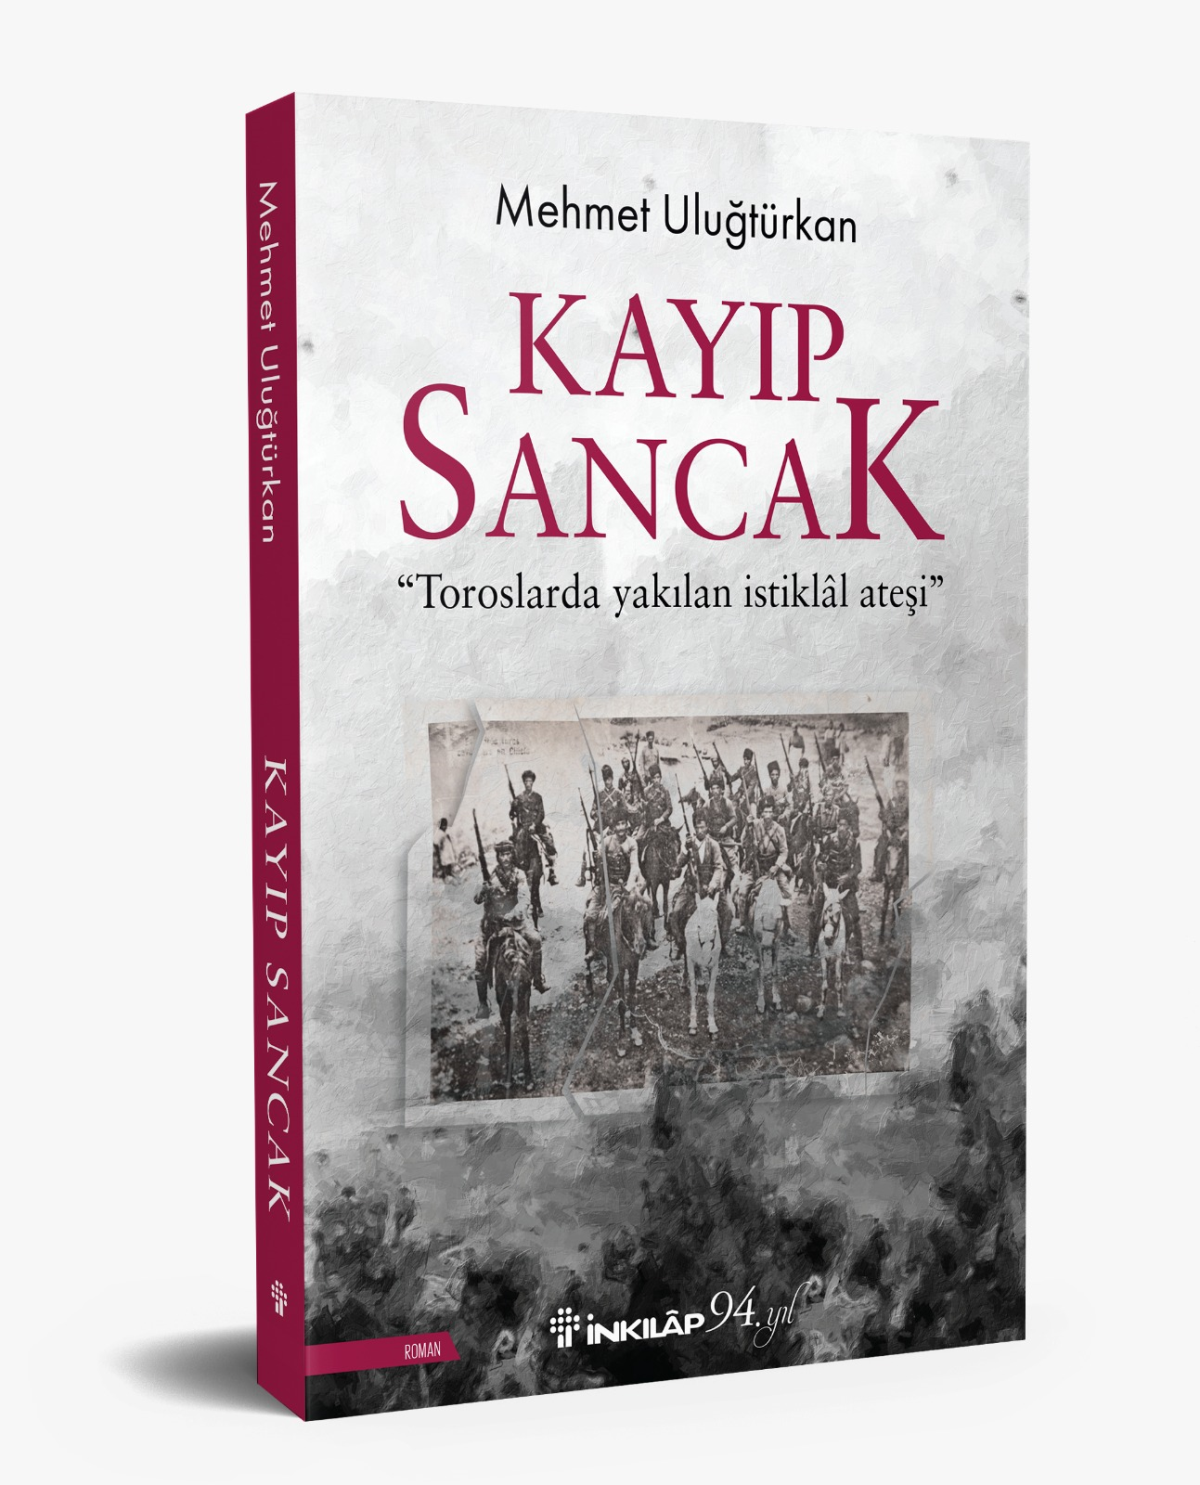 Mehmet Uluğtürkan’dan yeni roman: ‘Kayıp Sancak’